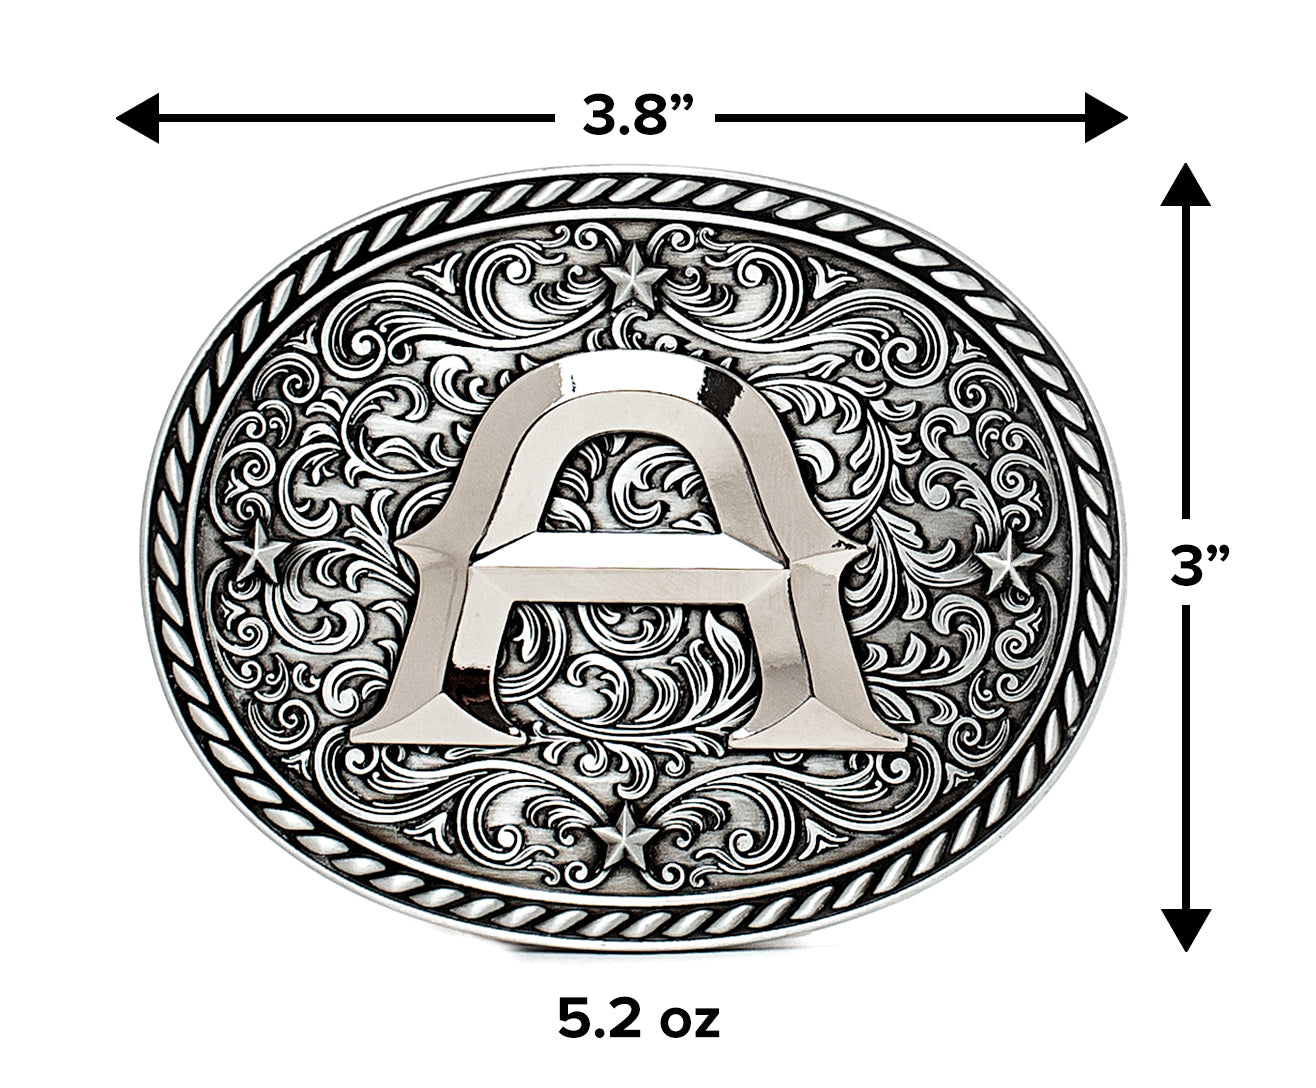 Western Cowboy/Cowgirl Initial Belt Buckle Silver